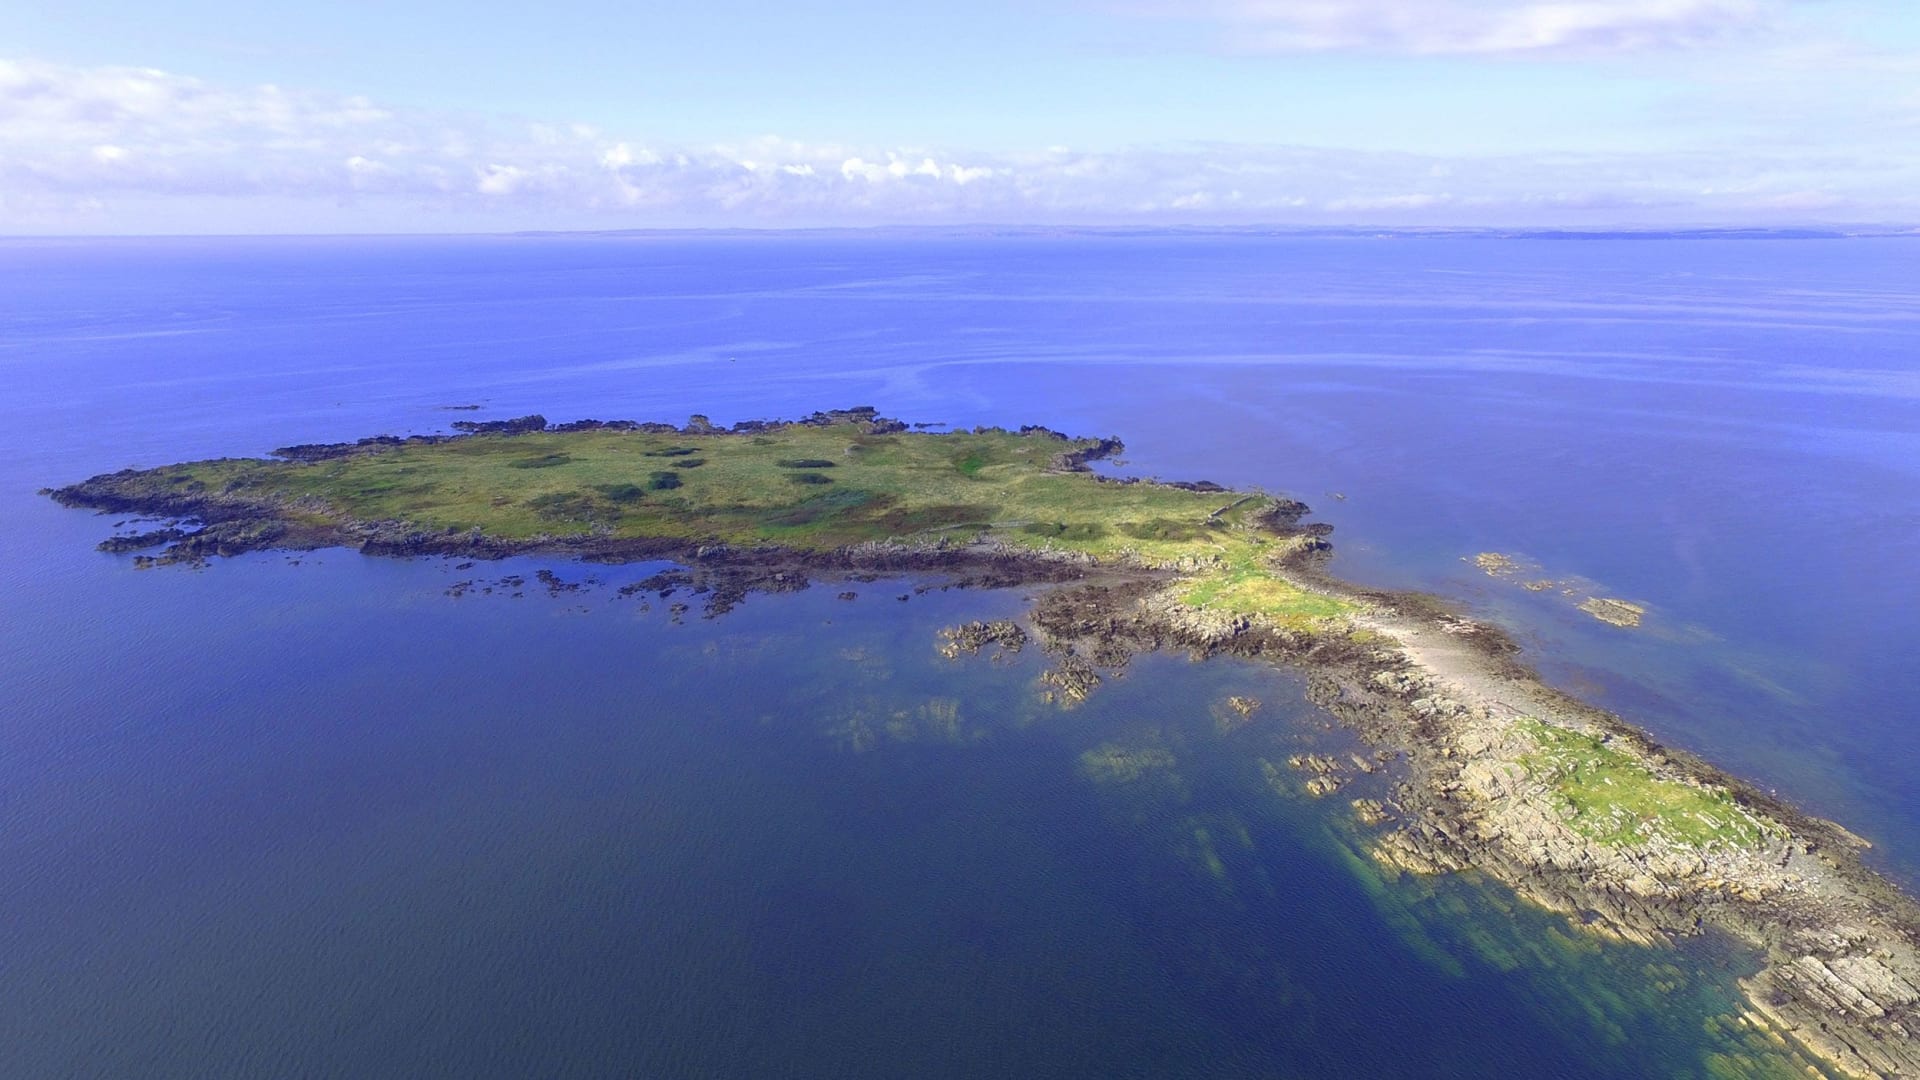 هل تحلم بامتلاك جزيرتك الخاصة؟ هذه الجزيرة الاسكتلندية قد تكون لك مقابل هذا السعر